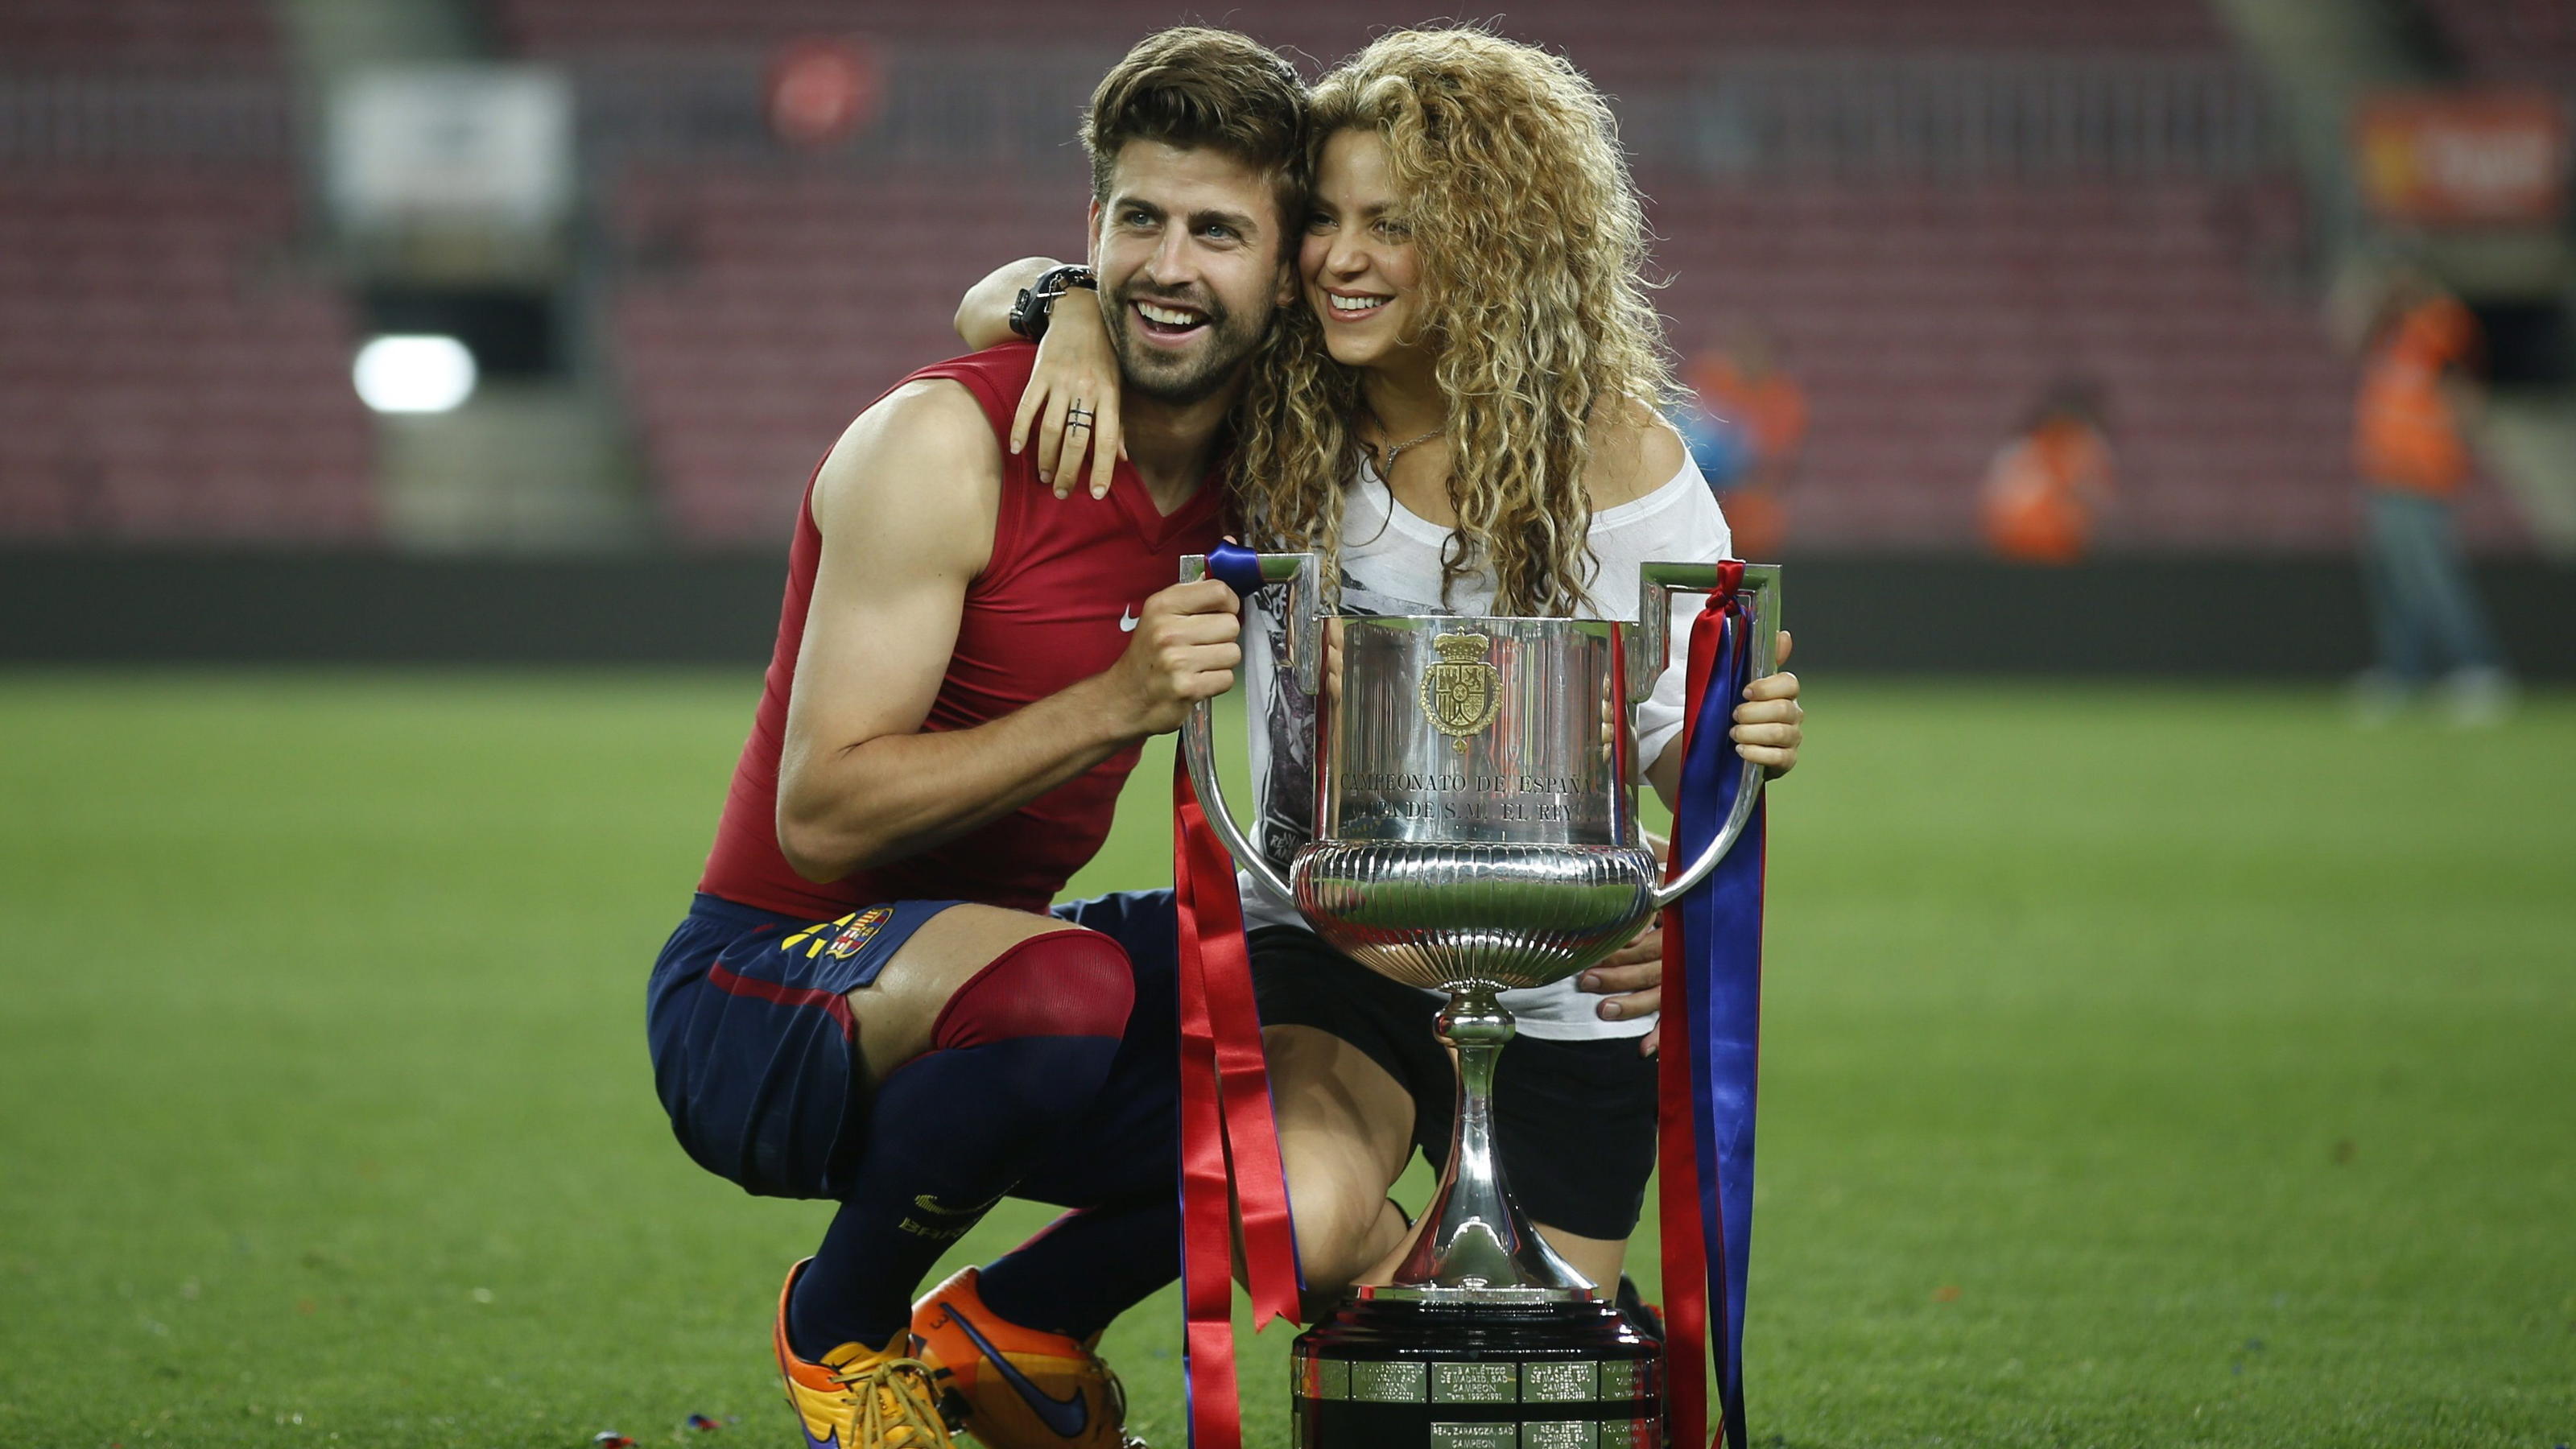 Gemeinsam feierten sie auch sportliche Triumphe wie den Sieg in der Champions League: Piqué mit seiner Shakira.